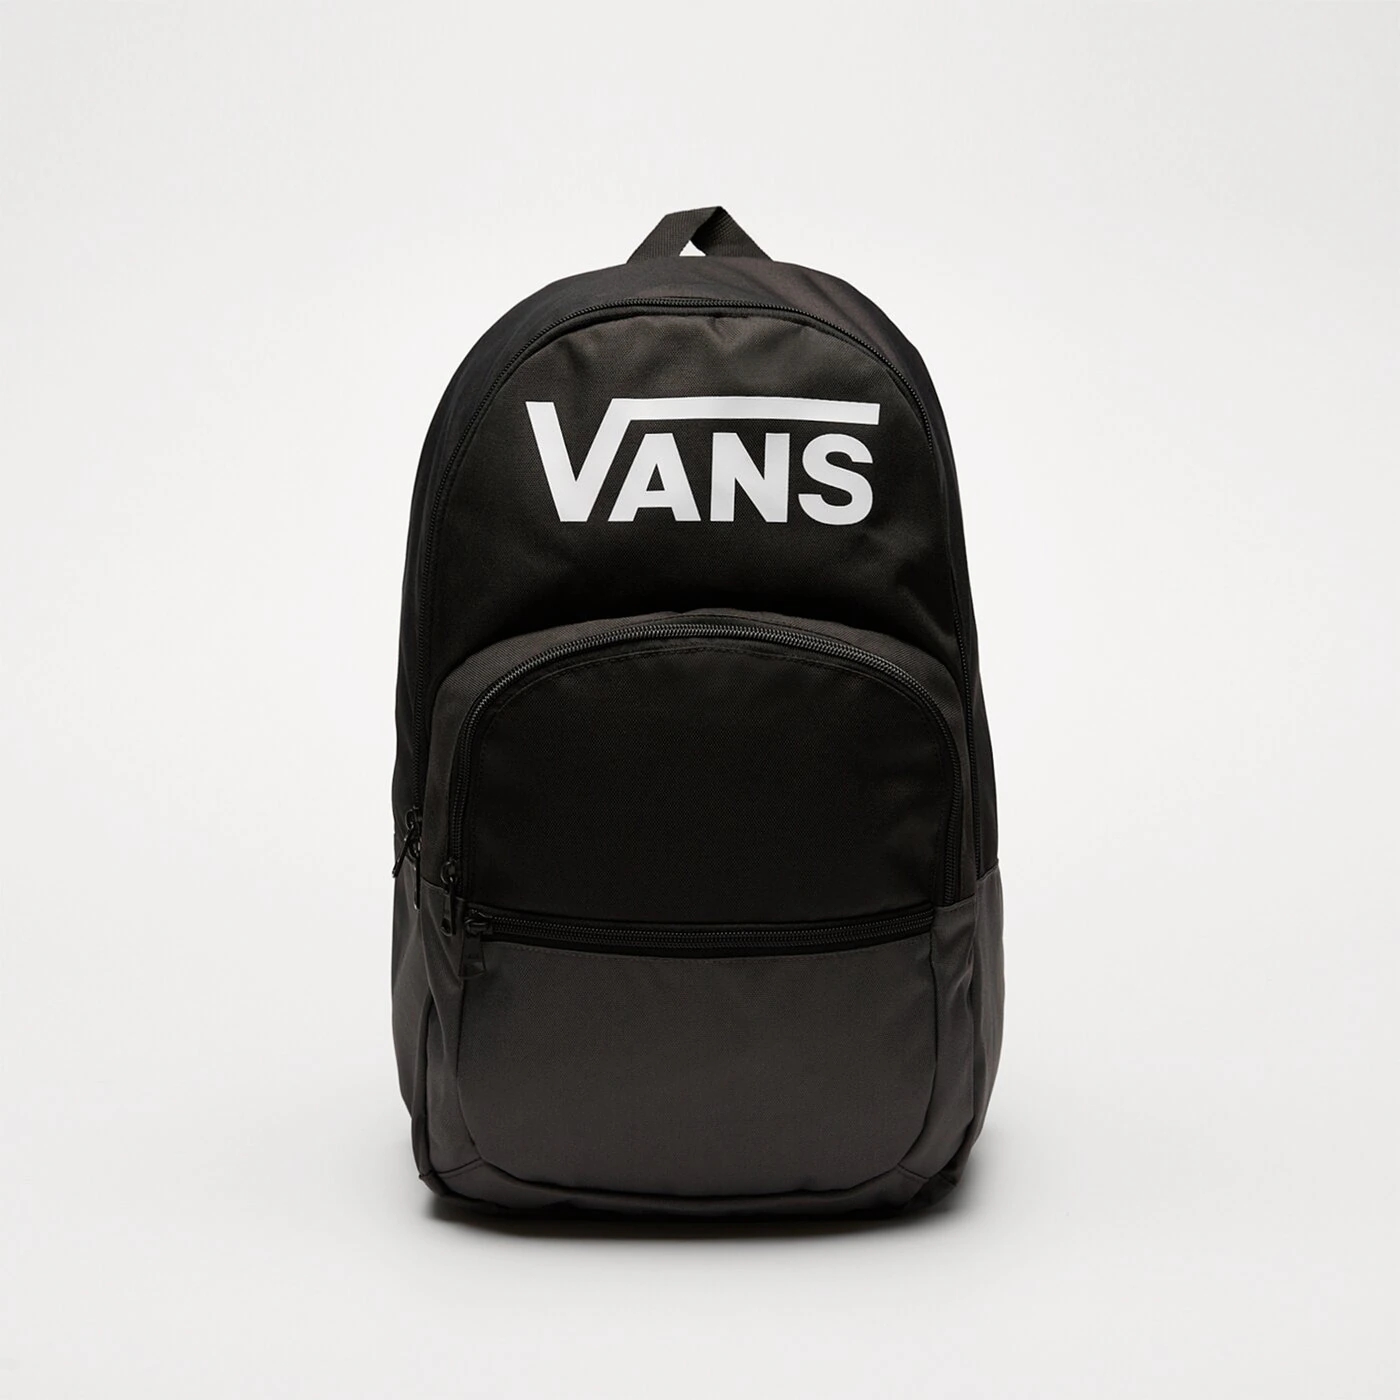 Рюкзак Vans с логотипом, черный сумка рюкзак для снаряжения mares cruise mesh back pack elite